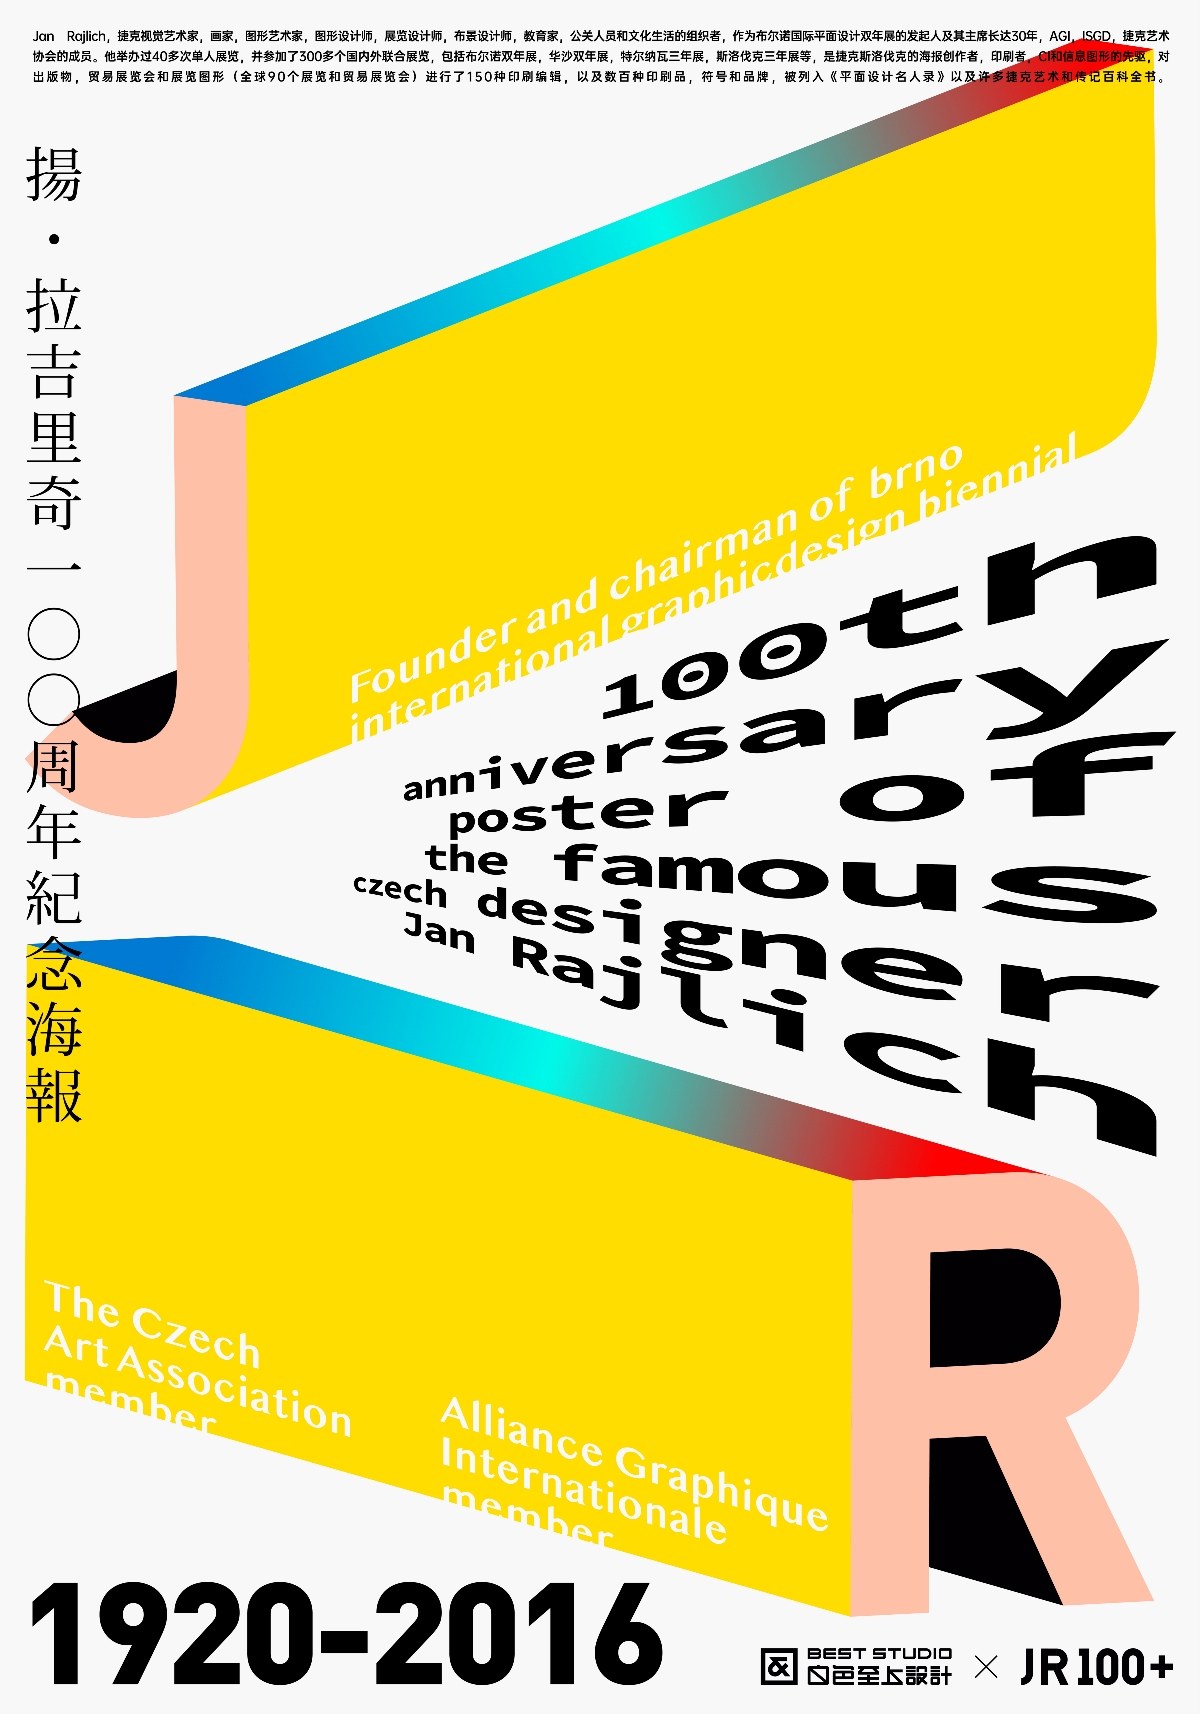 【白色至上设计】JR100+海报设计合集(第二期)